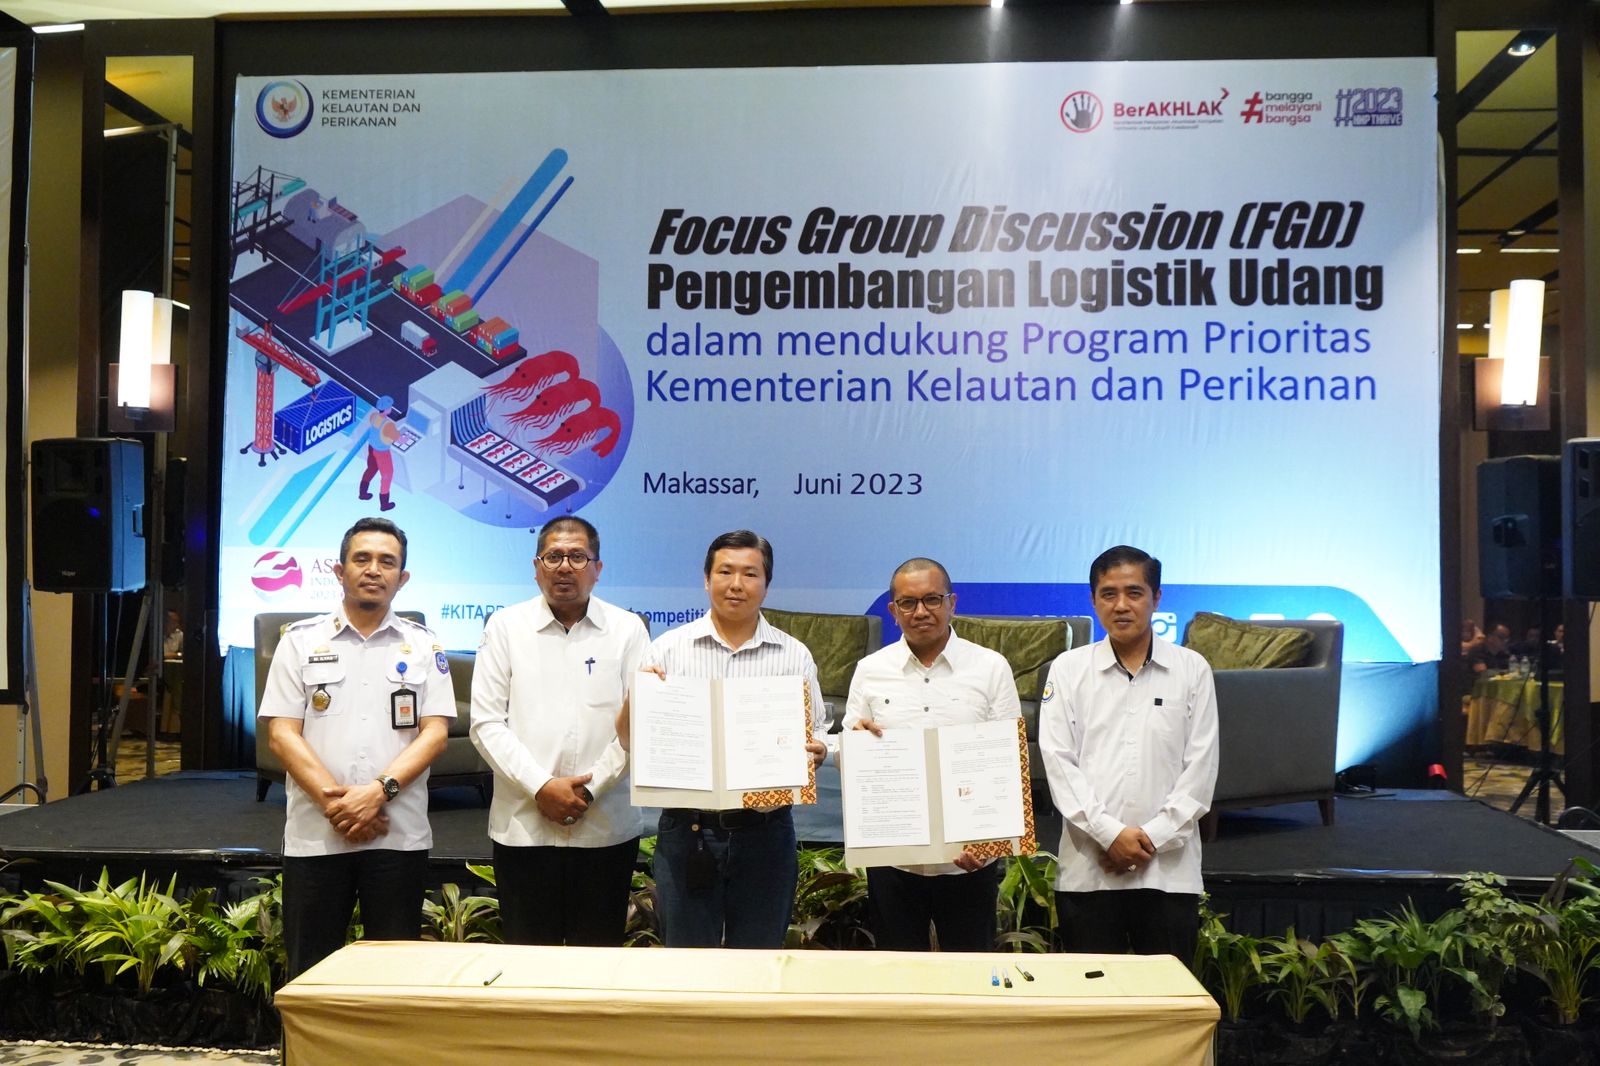 FGD Pengembangan Logistik Udang dalam mendukung Program Prioritas Kementerian Kelautan dan Perikanan